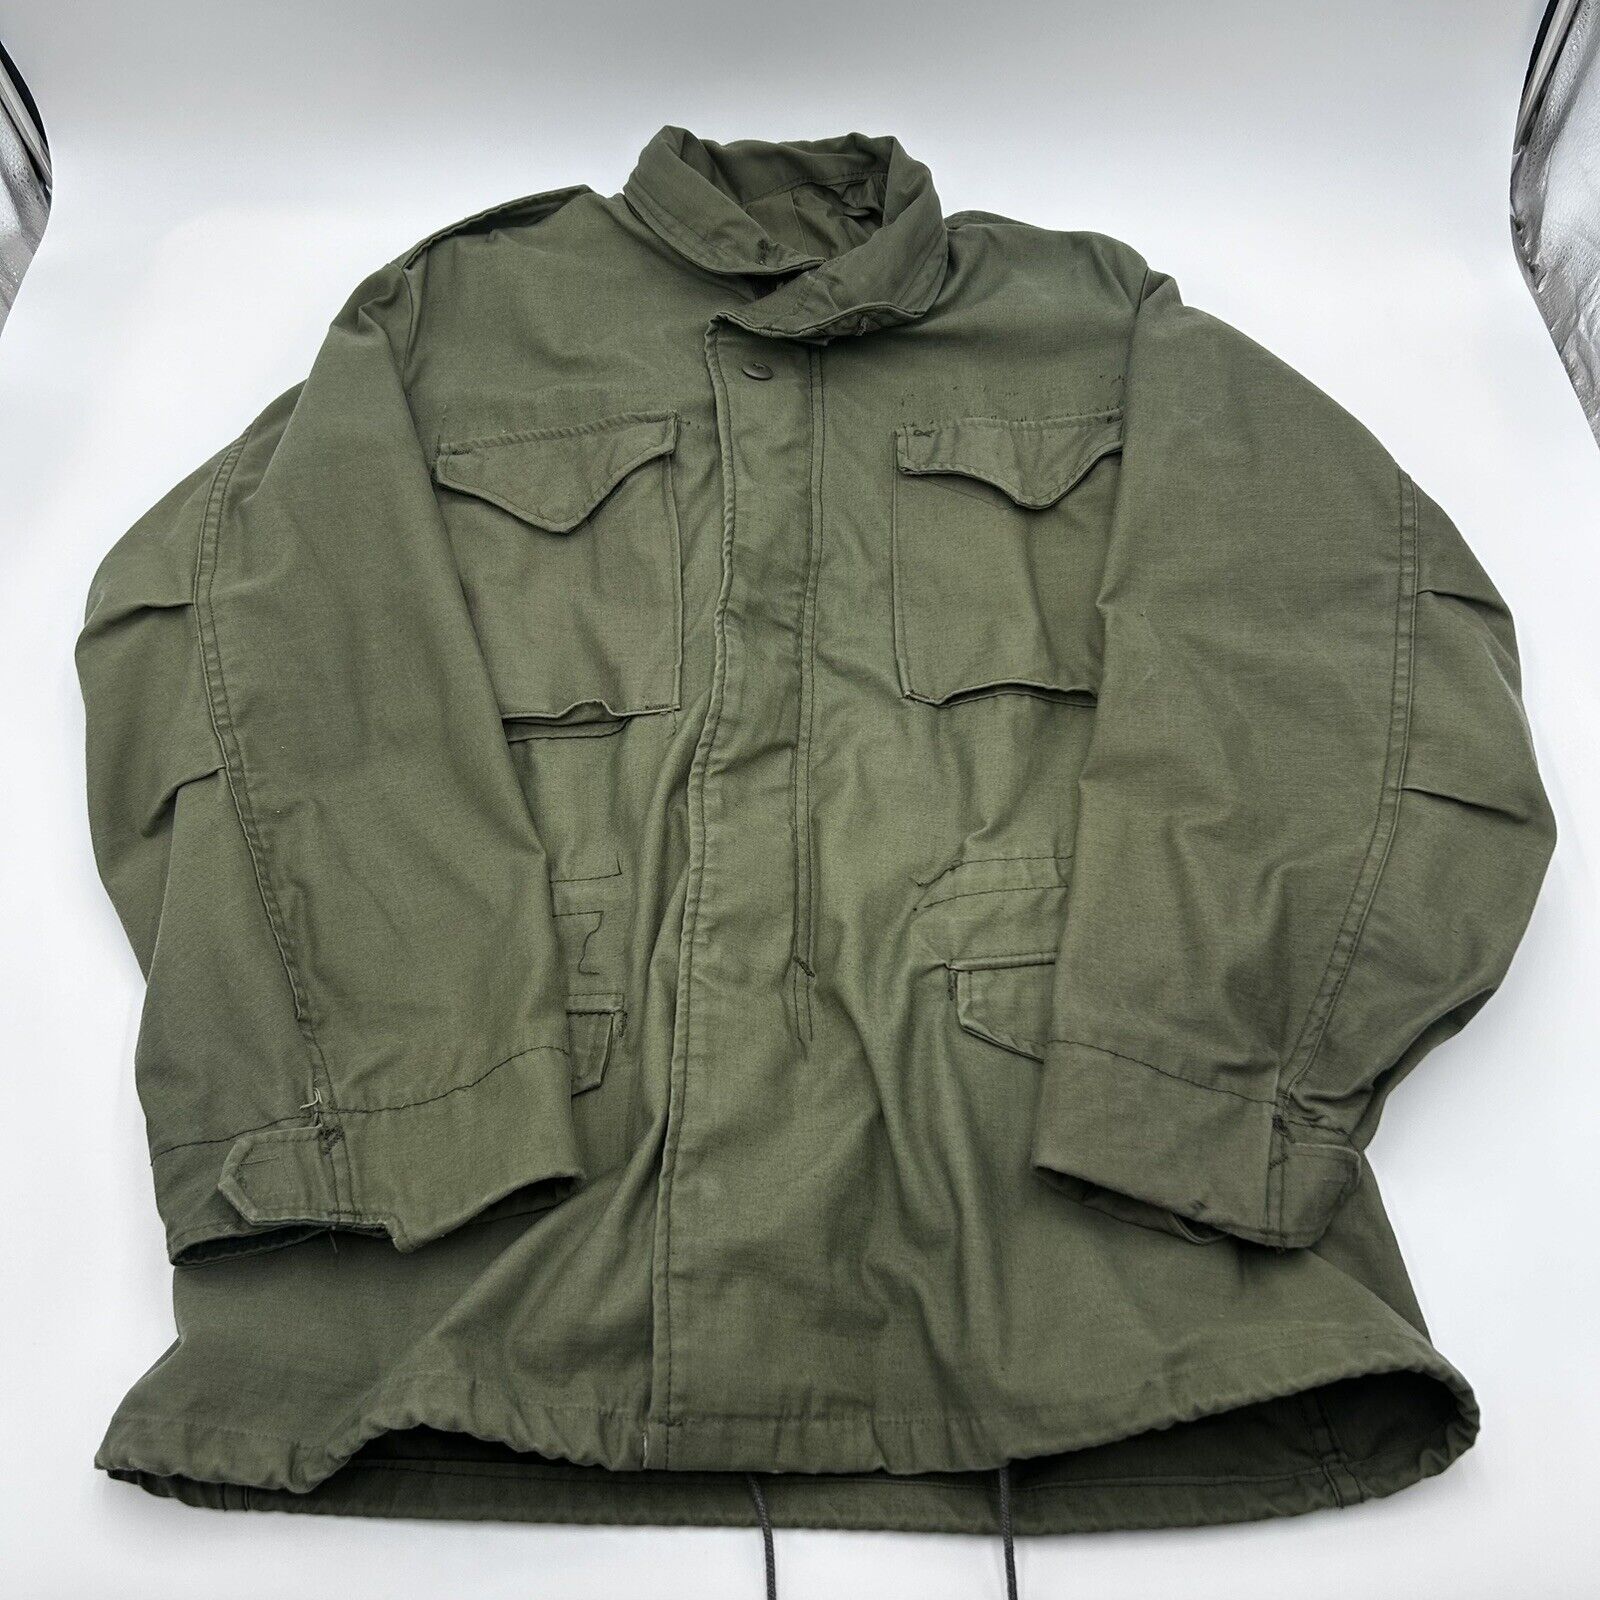 Vintage 60s 70s Men's Vietnam OG-107 M-65 Cold Weather Green Coat Medium Regular